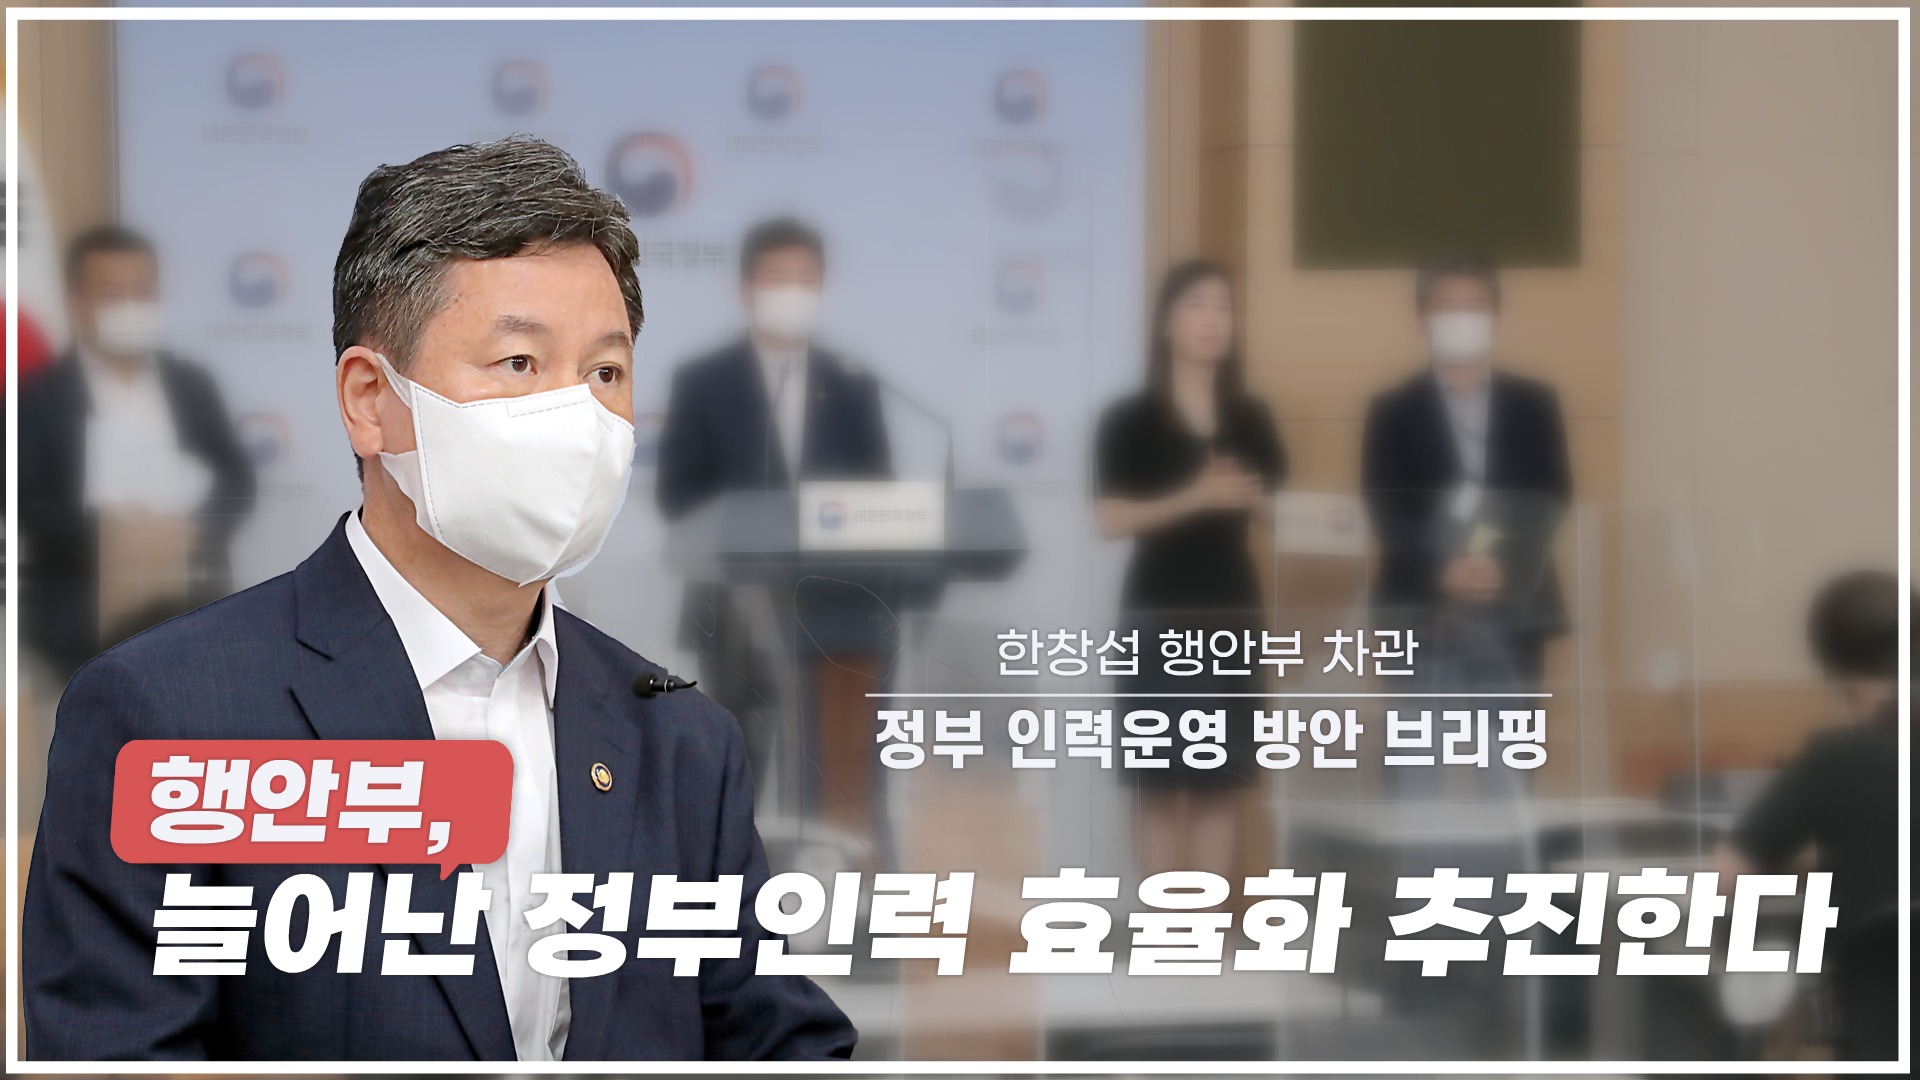 한창섭 차관, 새정부「인력운영 방안」 브리핑